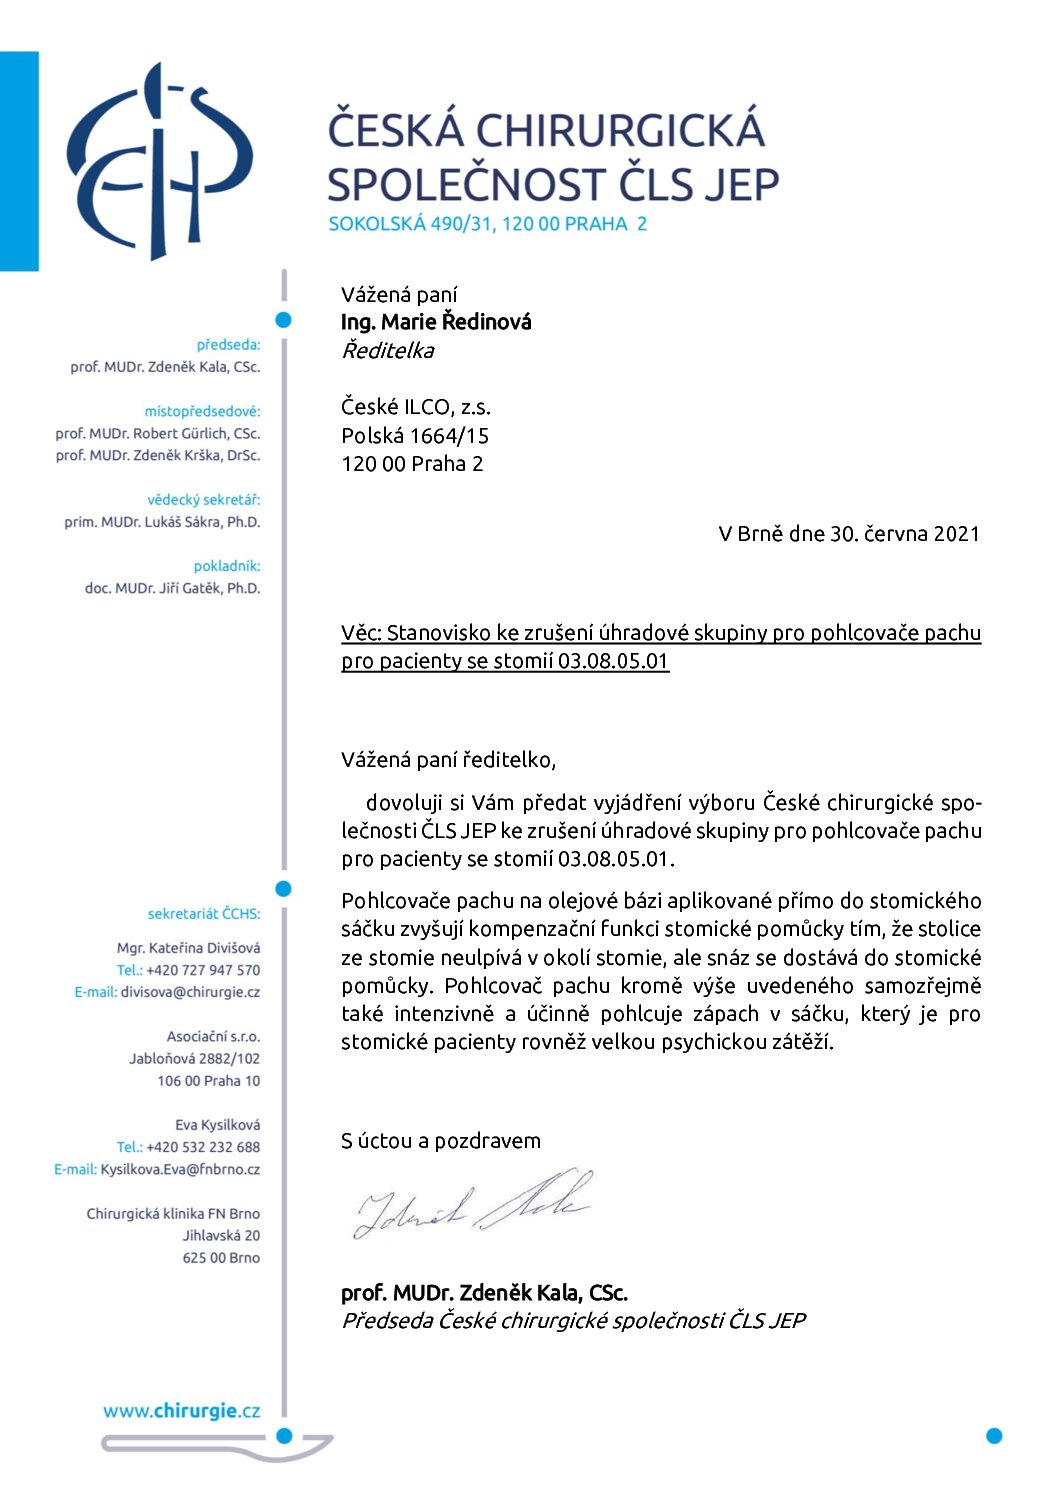 Stanovisko výboru ČCHS ČLS JEP ke zrušení úhradové skupiny pro pohlcovače pachu pro pacienty se stomií (30. 6. 2021)